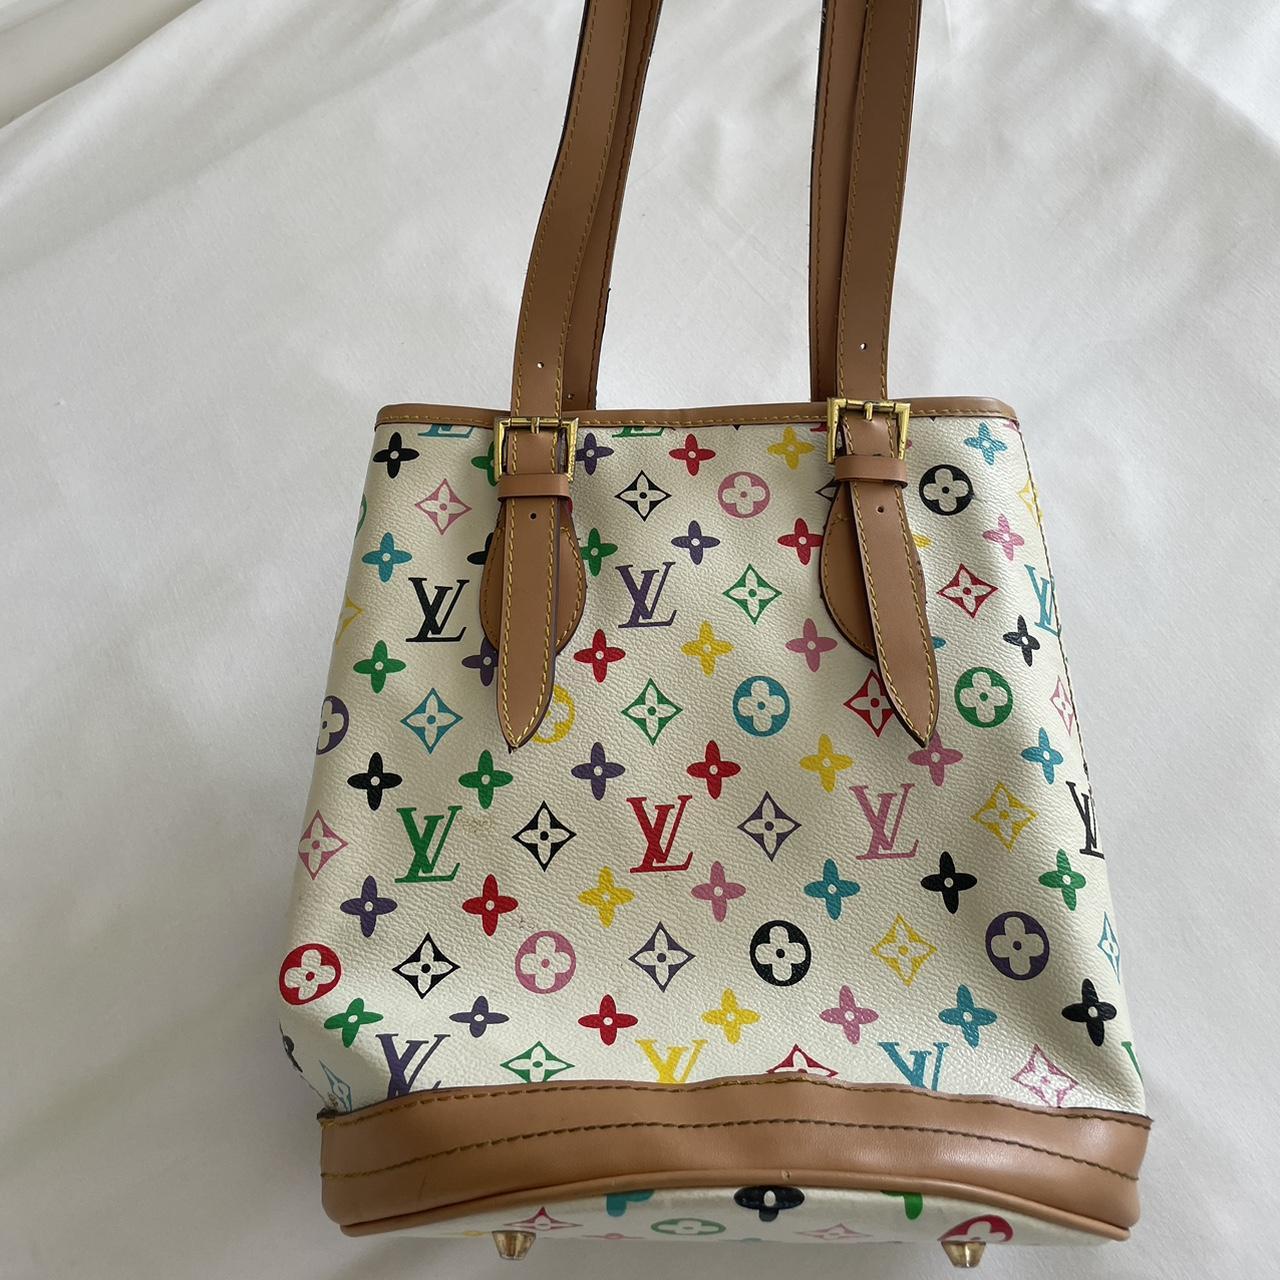 F a k e Louis Vuitton Monogram colored bag - Depop